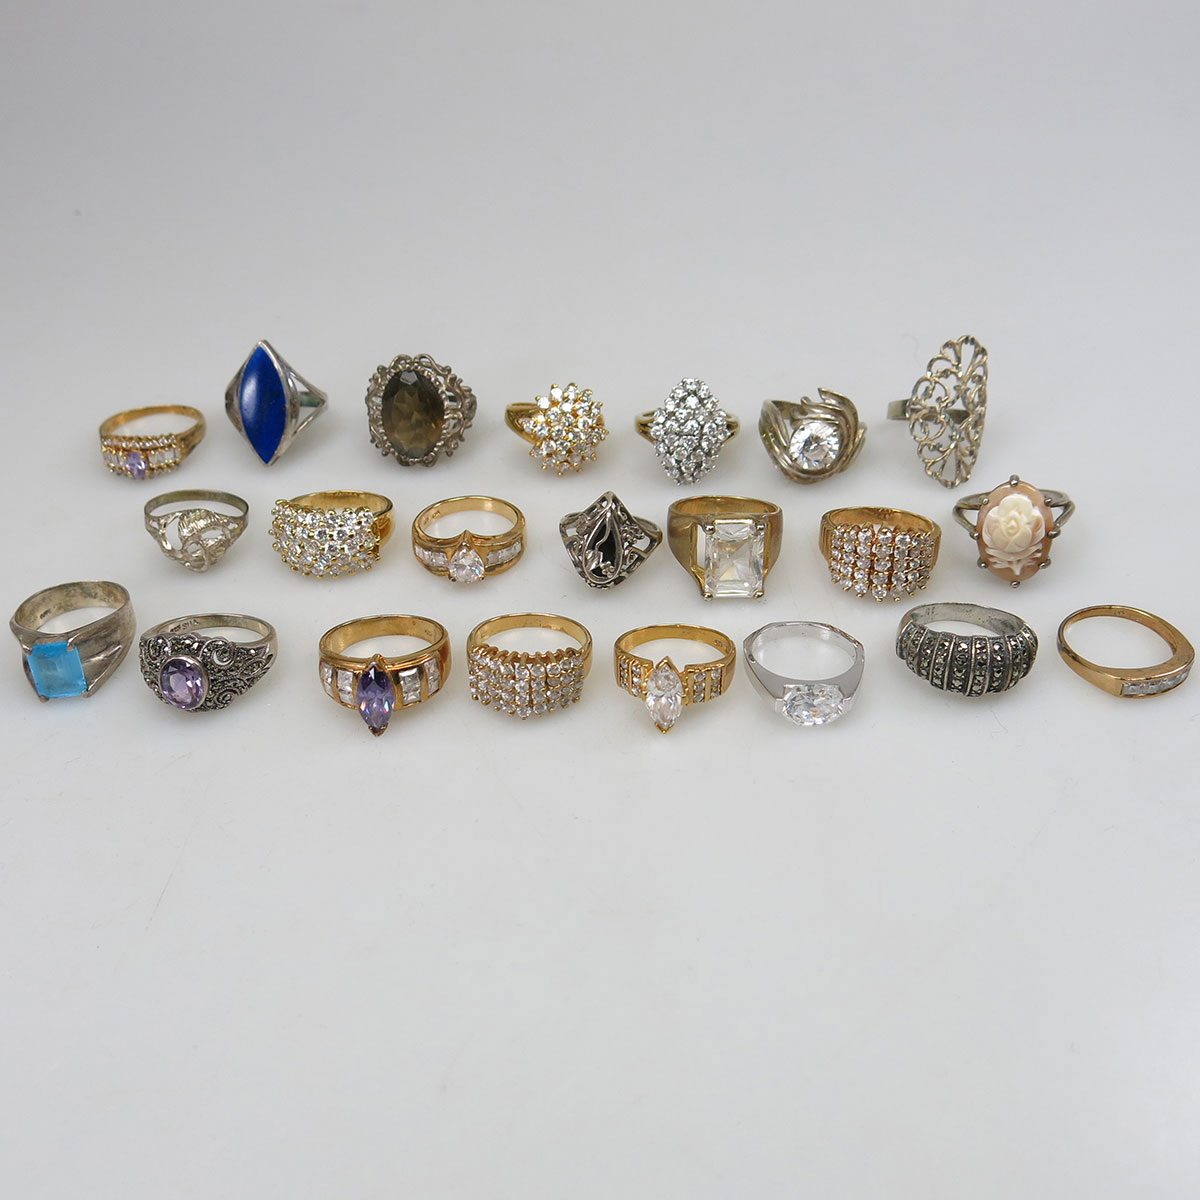 22 Various Silver Rings